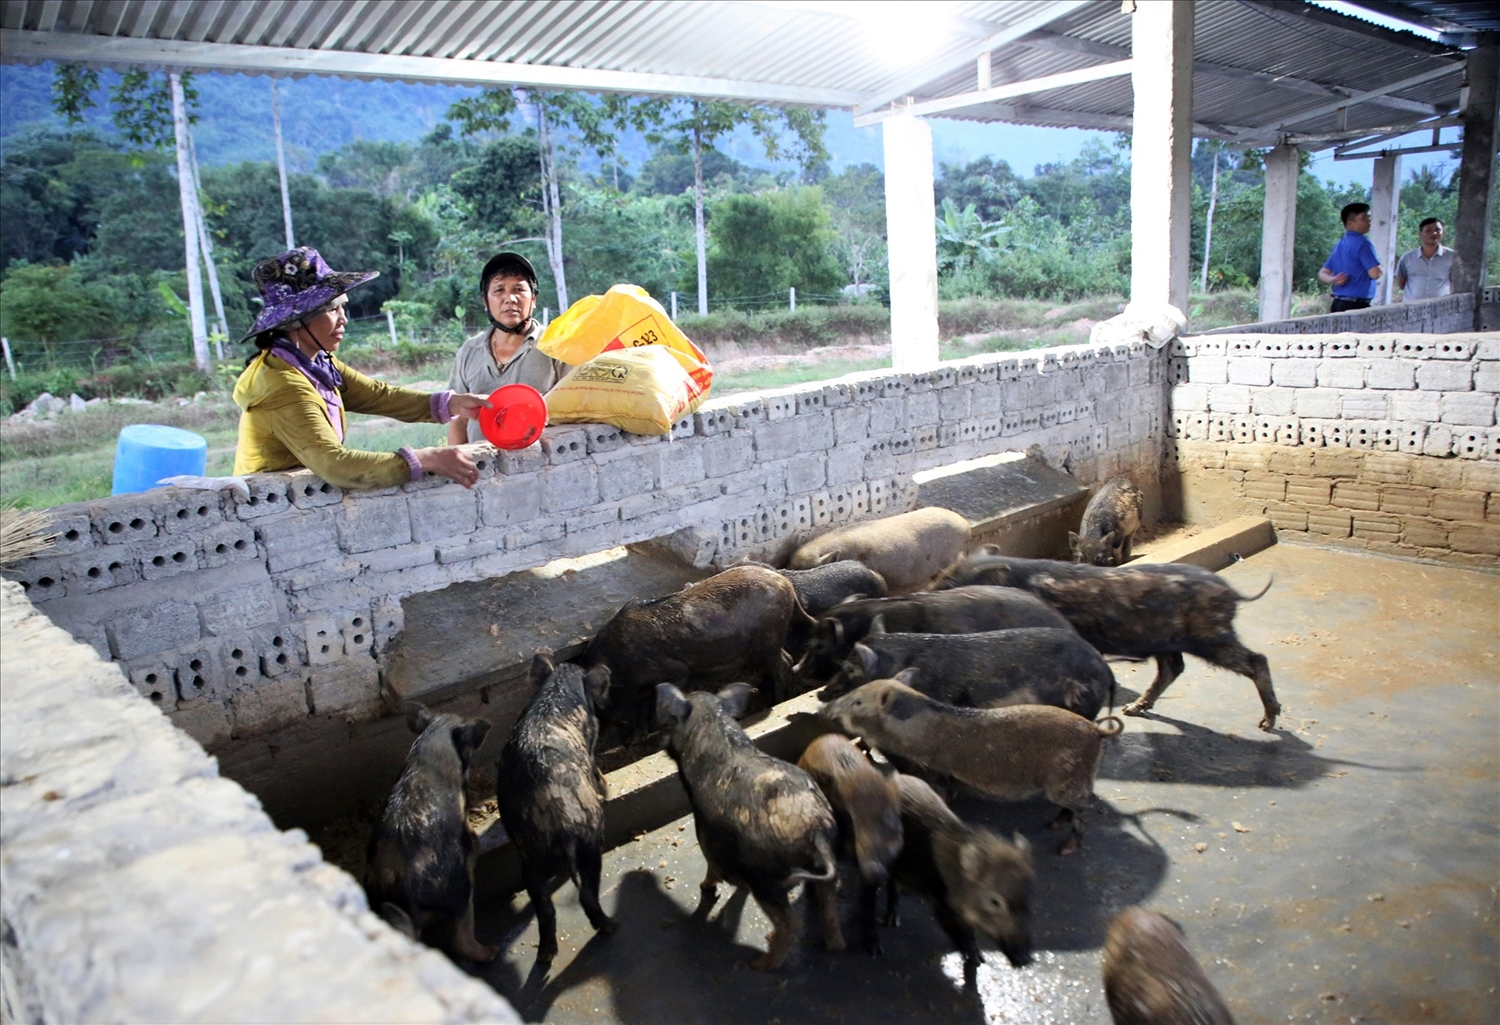  Mô hình chăn nuôi heo đen bản địa đem đến nhiều sự chuyển biến rõ rệt trong đời sống của người dân tộc ở Nam Giang.